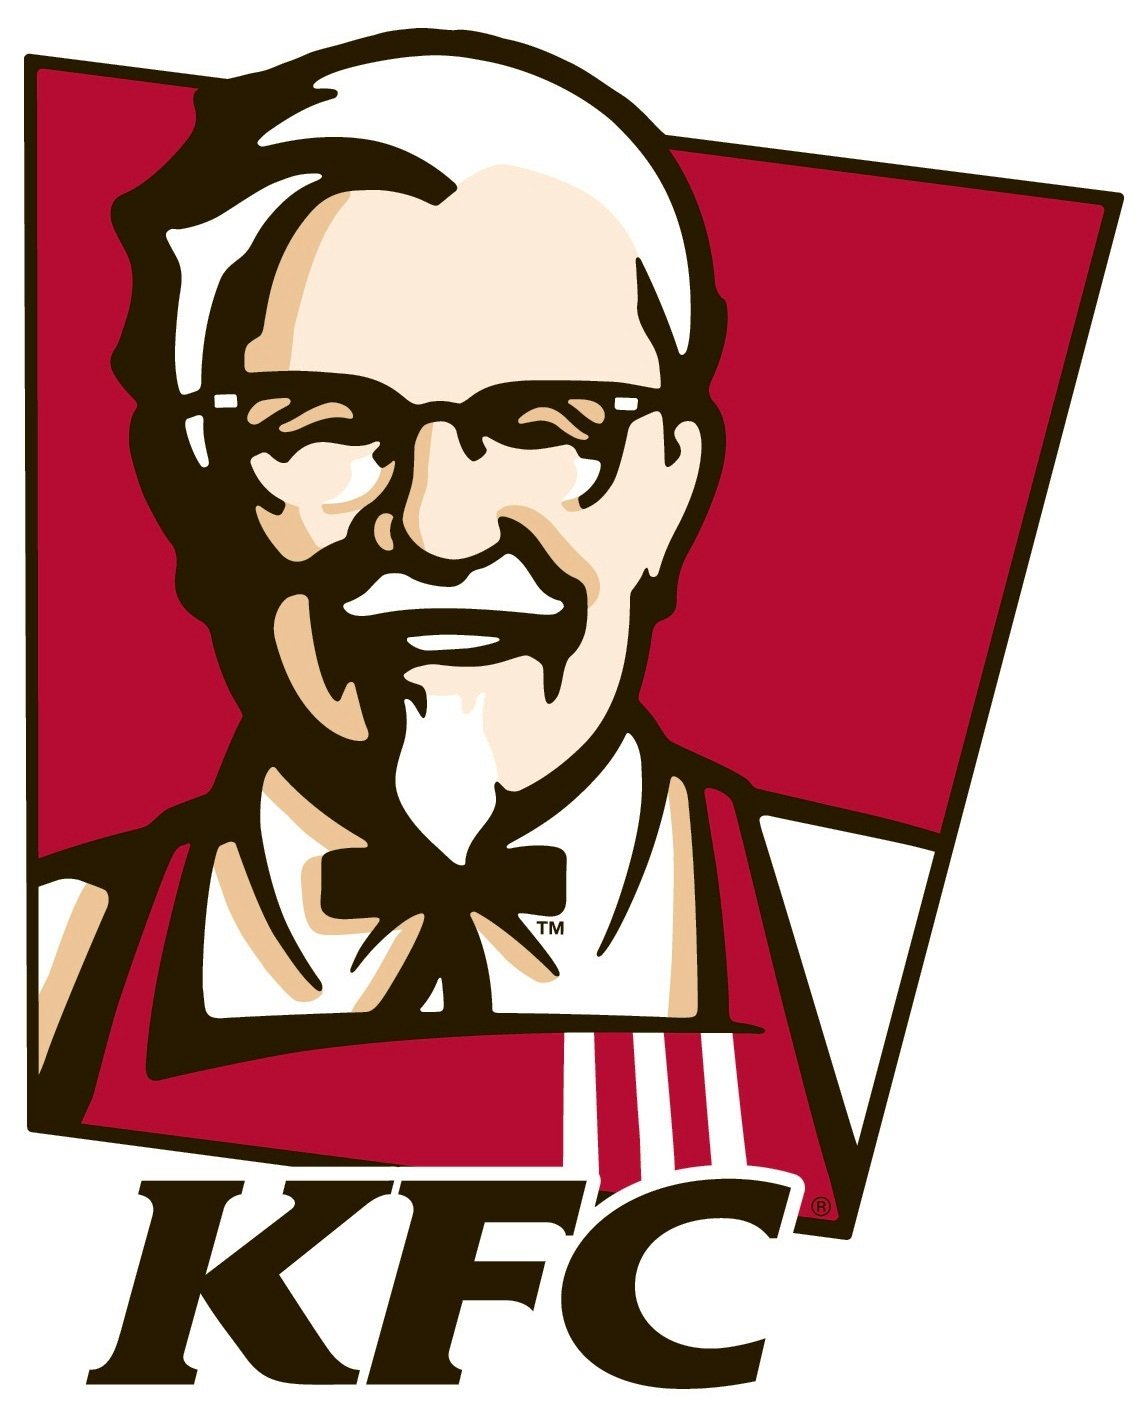 Kfc_logo-3.jpg